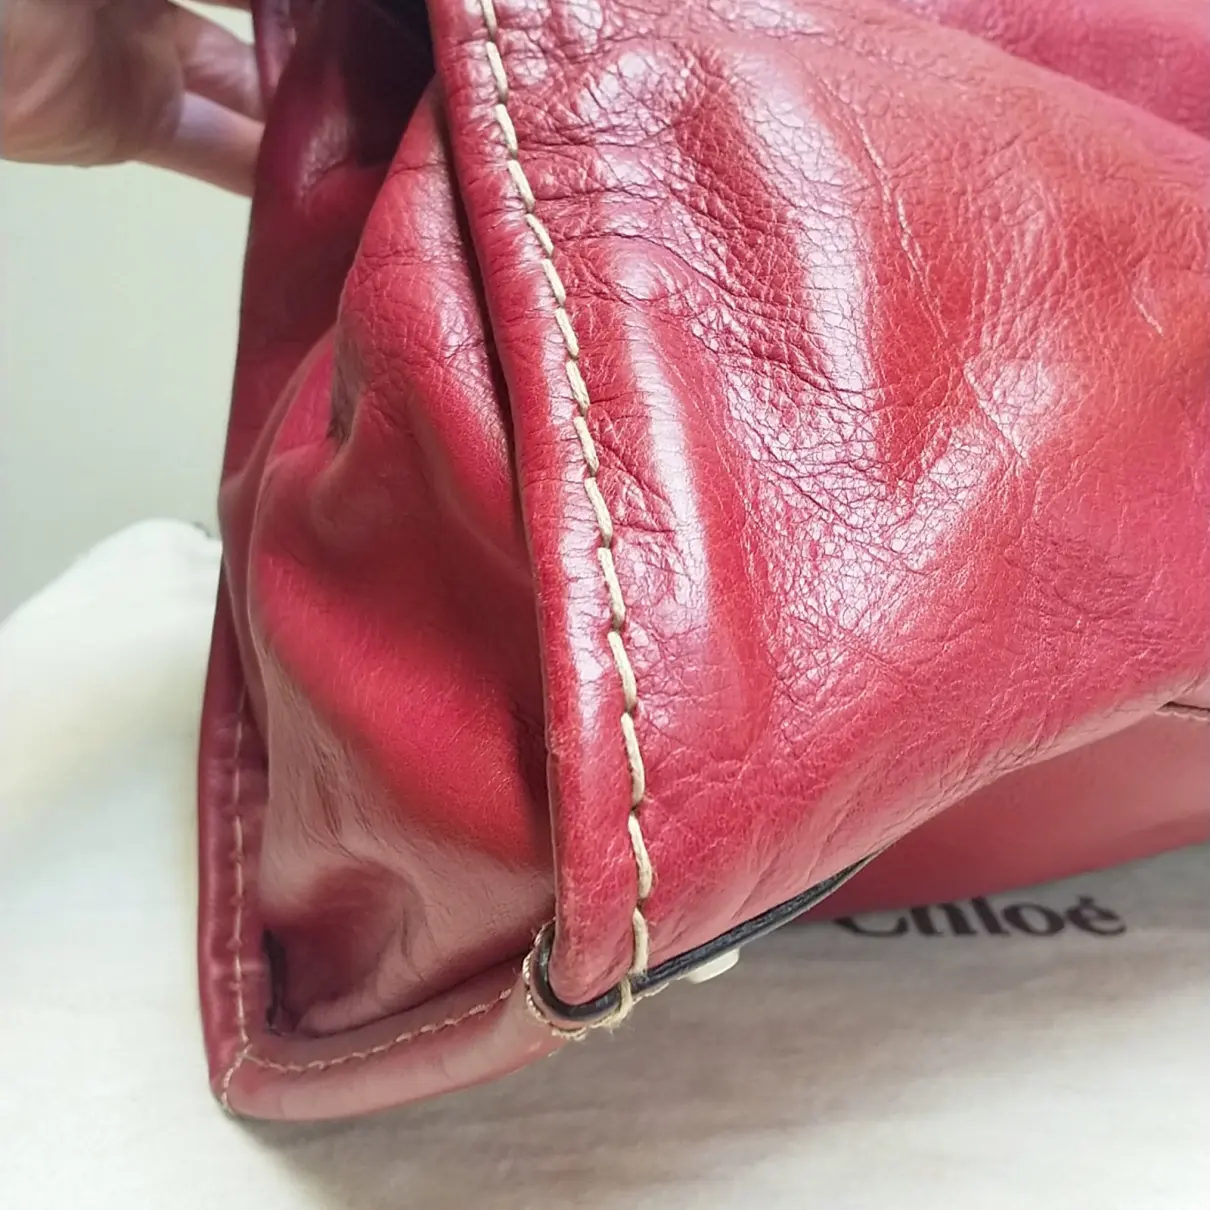 Edith leather handbag Chloé